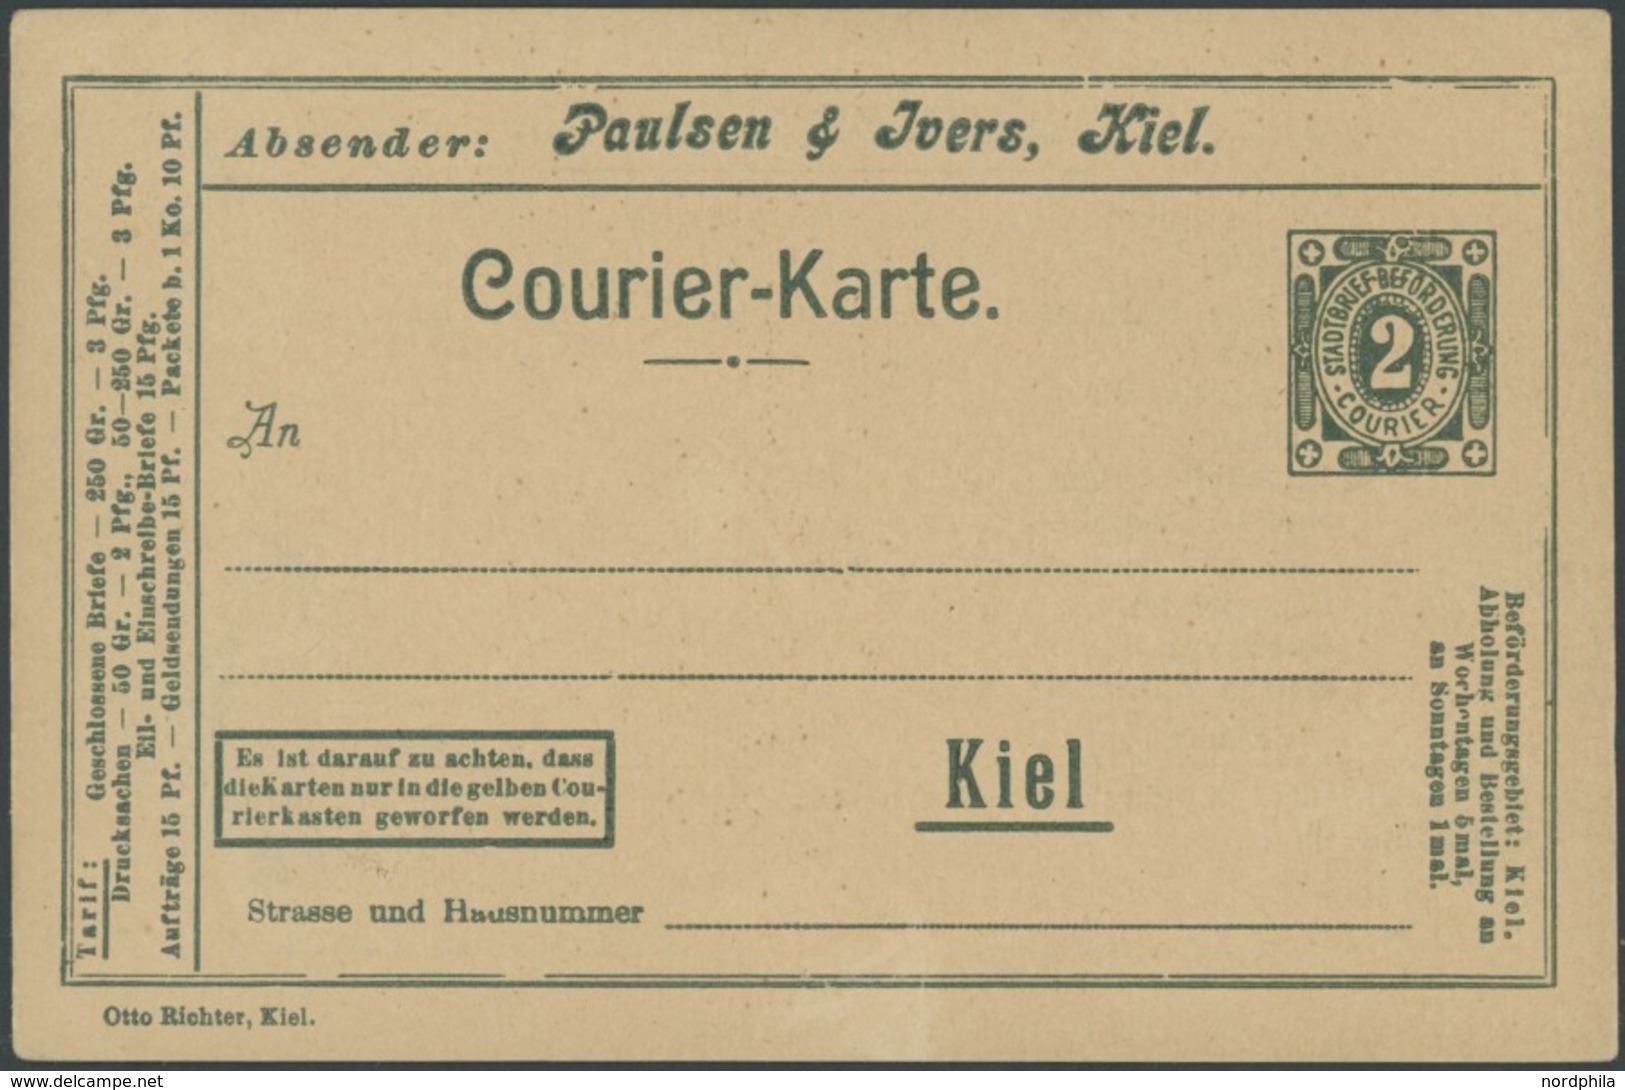 KIEL A P 12Z BRIEF, COURIER: 1898, 2 Pf. Grün Mit Rückseitigem Zudruck Kohlen-Offerte, Ungebraucht, Prachtkarte - Privatpost